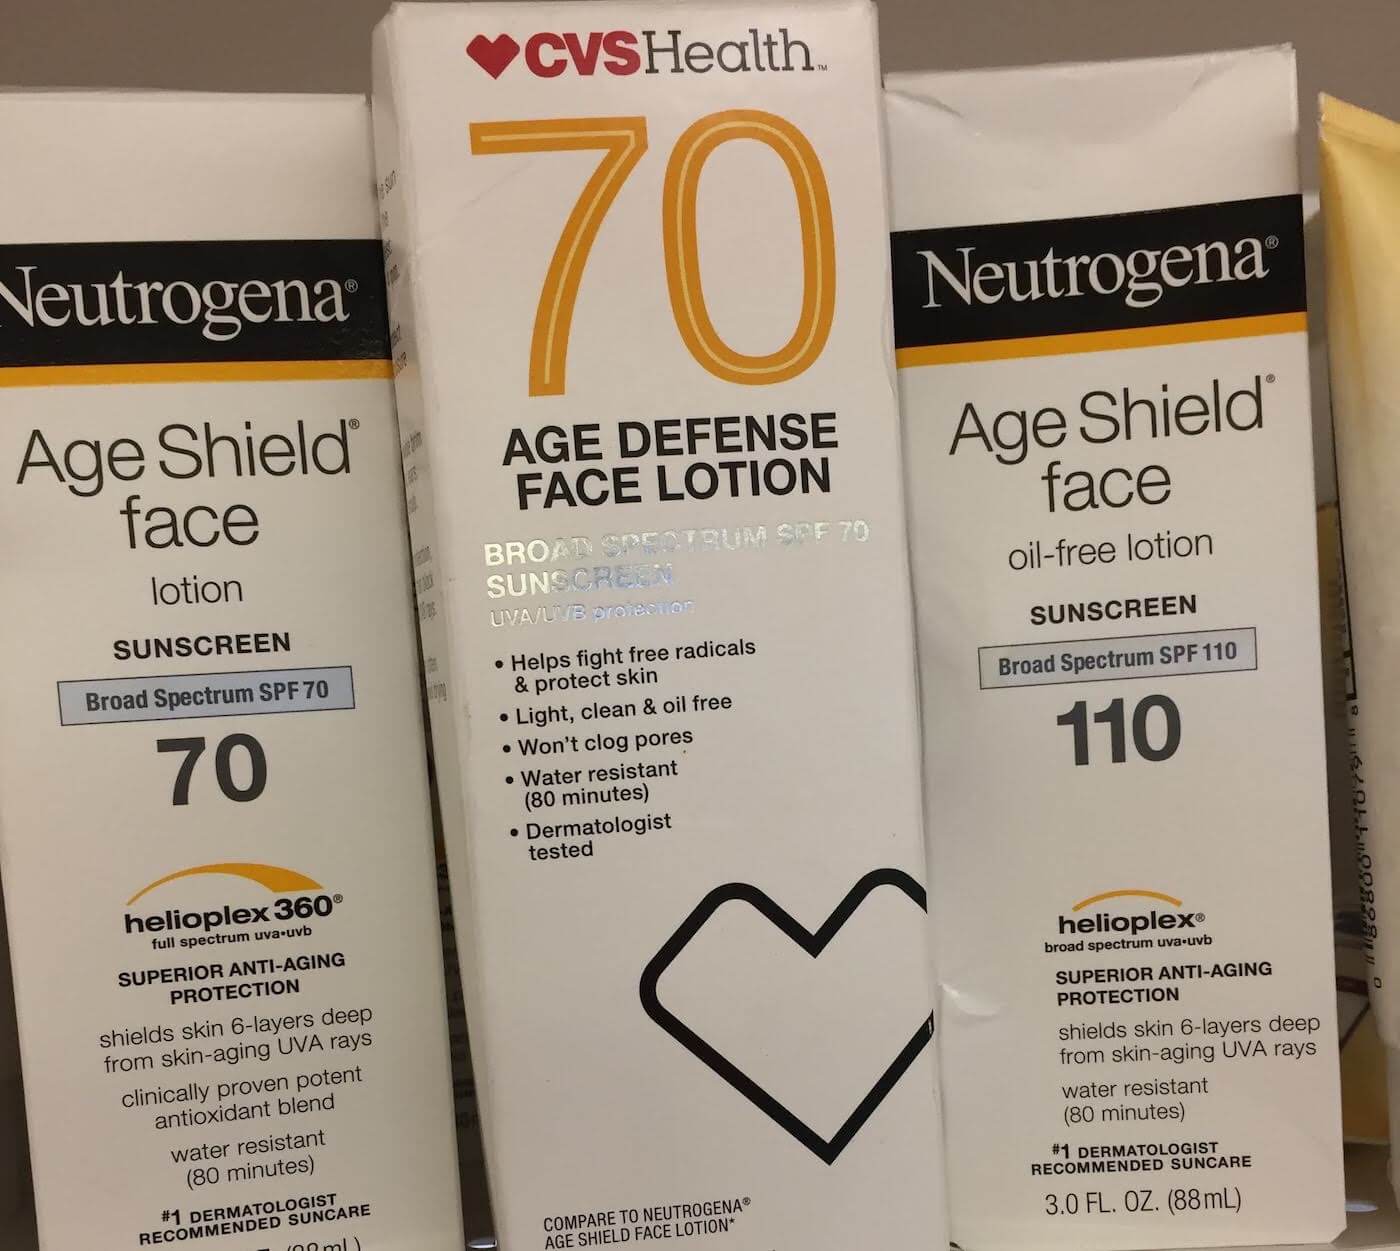 neutrogena age shield vs cvs health age defense sunscreen review comparison